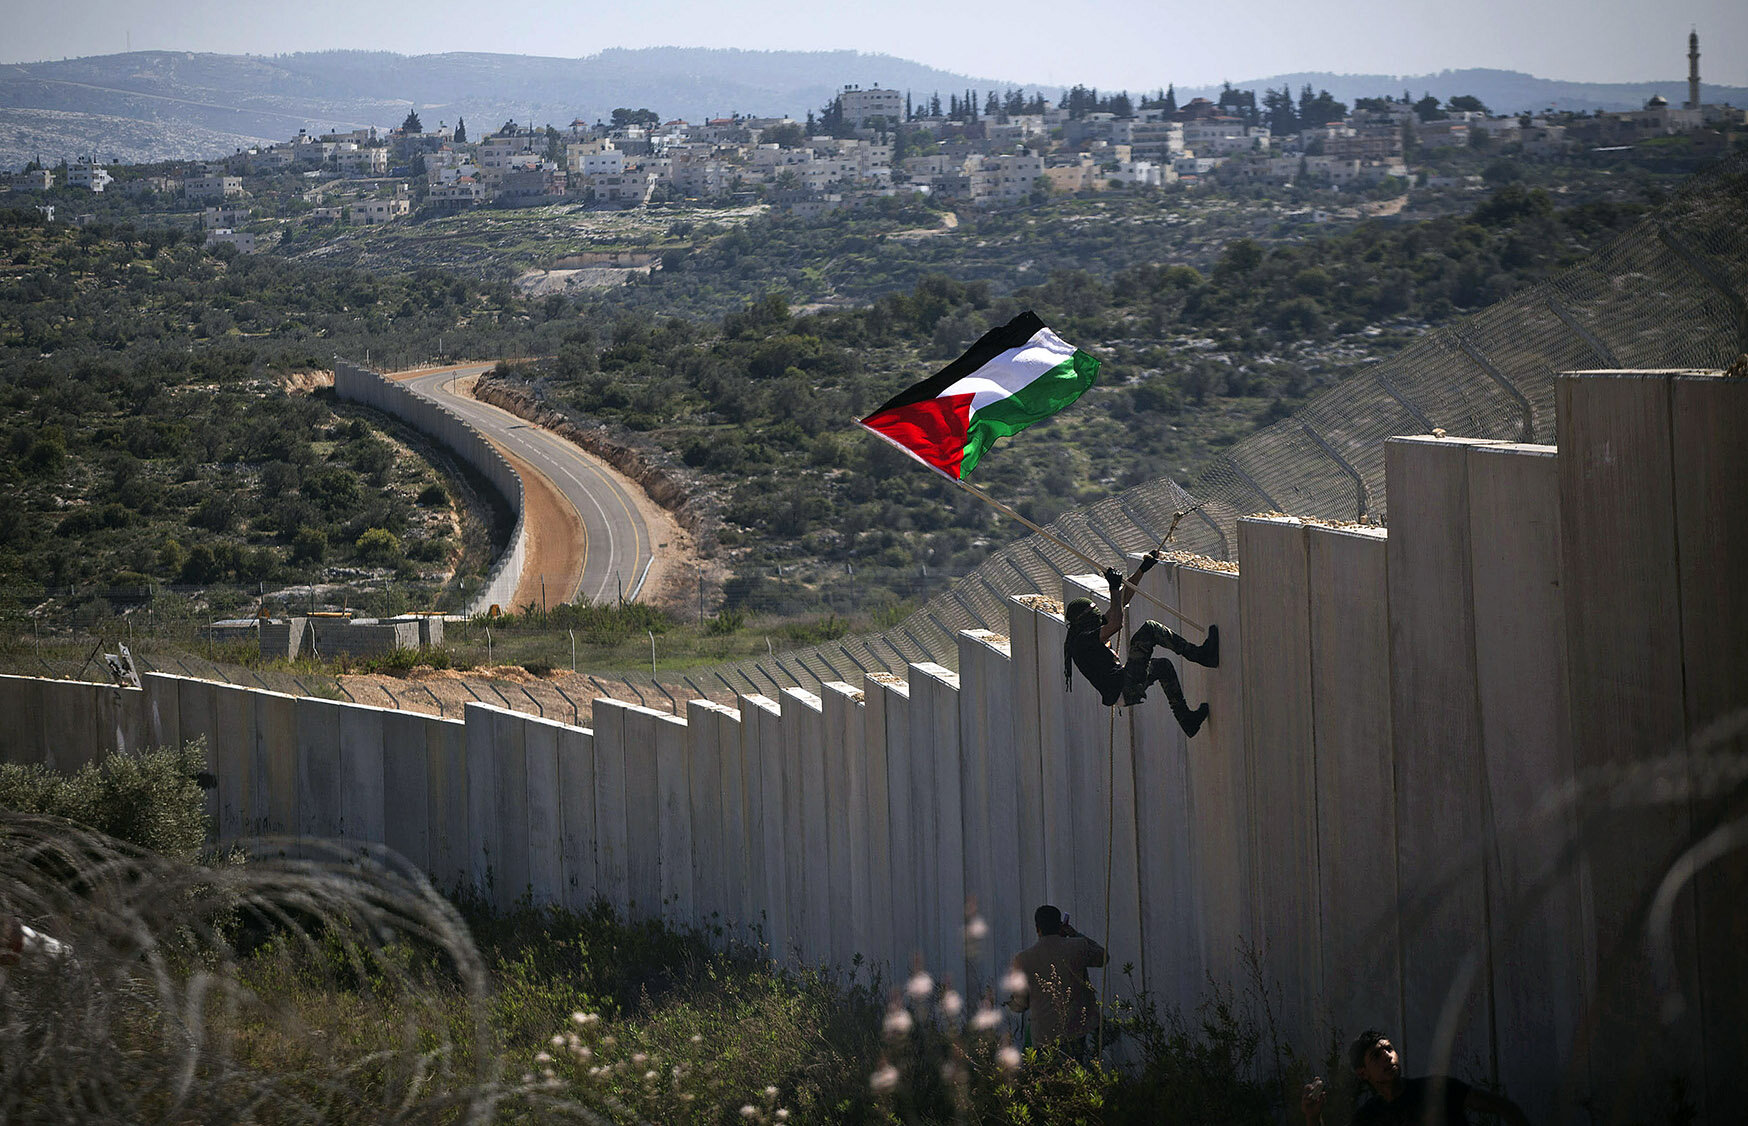 Le mur de séparation israélien à Bil'in, où un manifestant palestinien plante un drapeau, la colonie de Modi'in Illit en arrière-plan (photo avec l'aimable autorisation d'Oren Ziv, du projet GroundTruth).